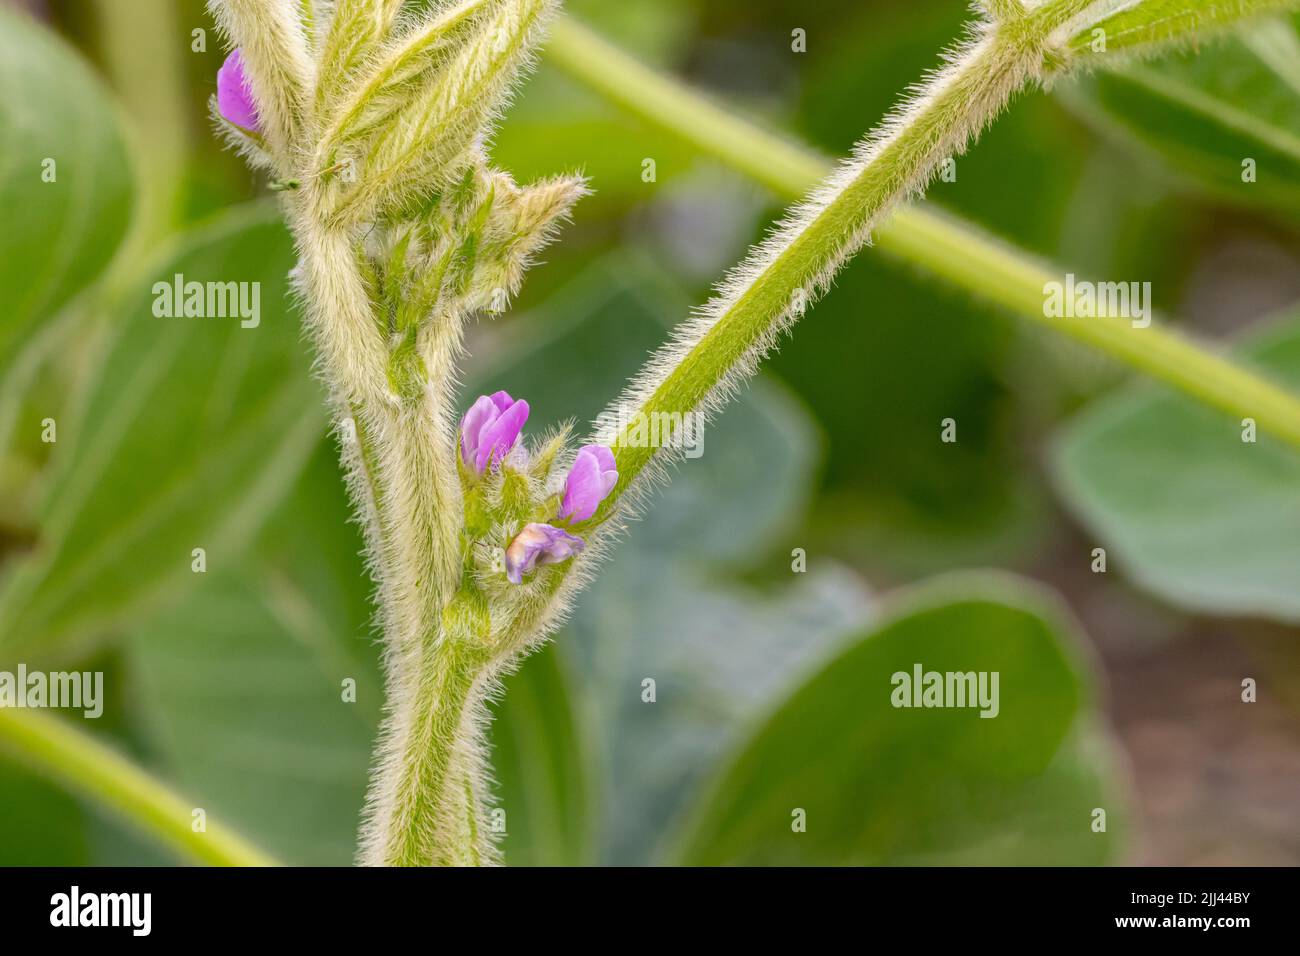 Flor y vaina de la planta de la soja. Polinización, salud vegetal y concepto agrícola. Foto de stock